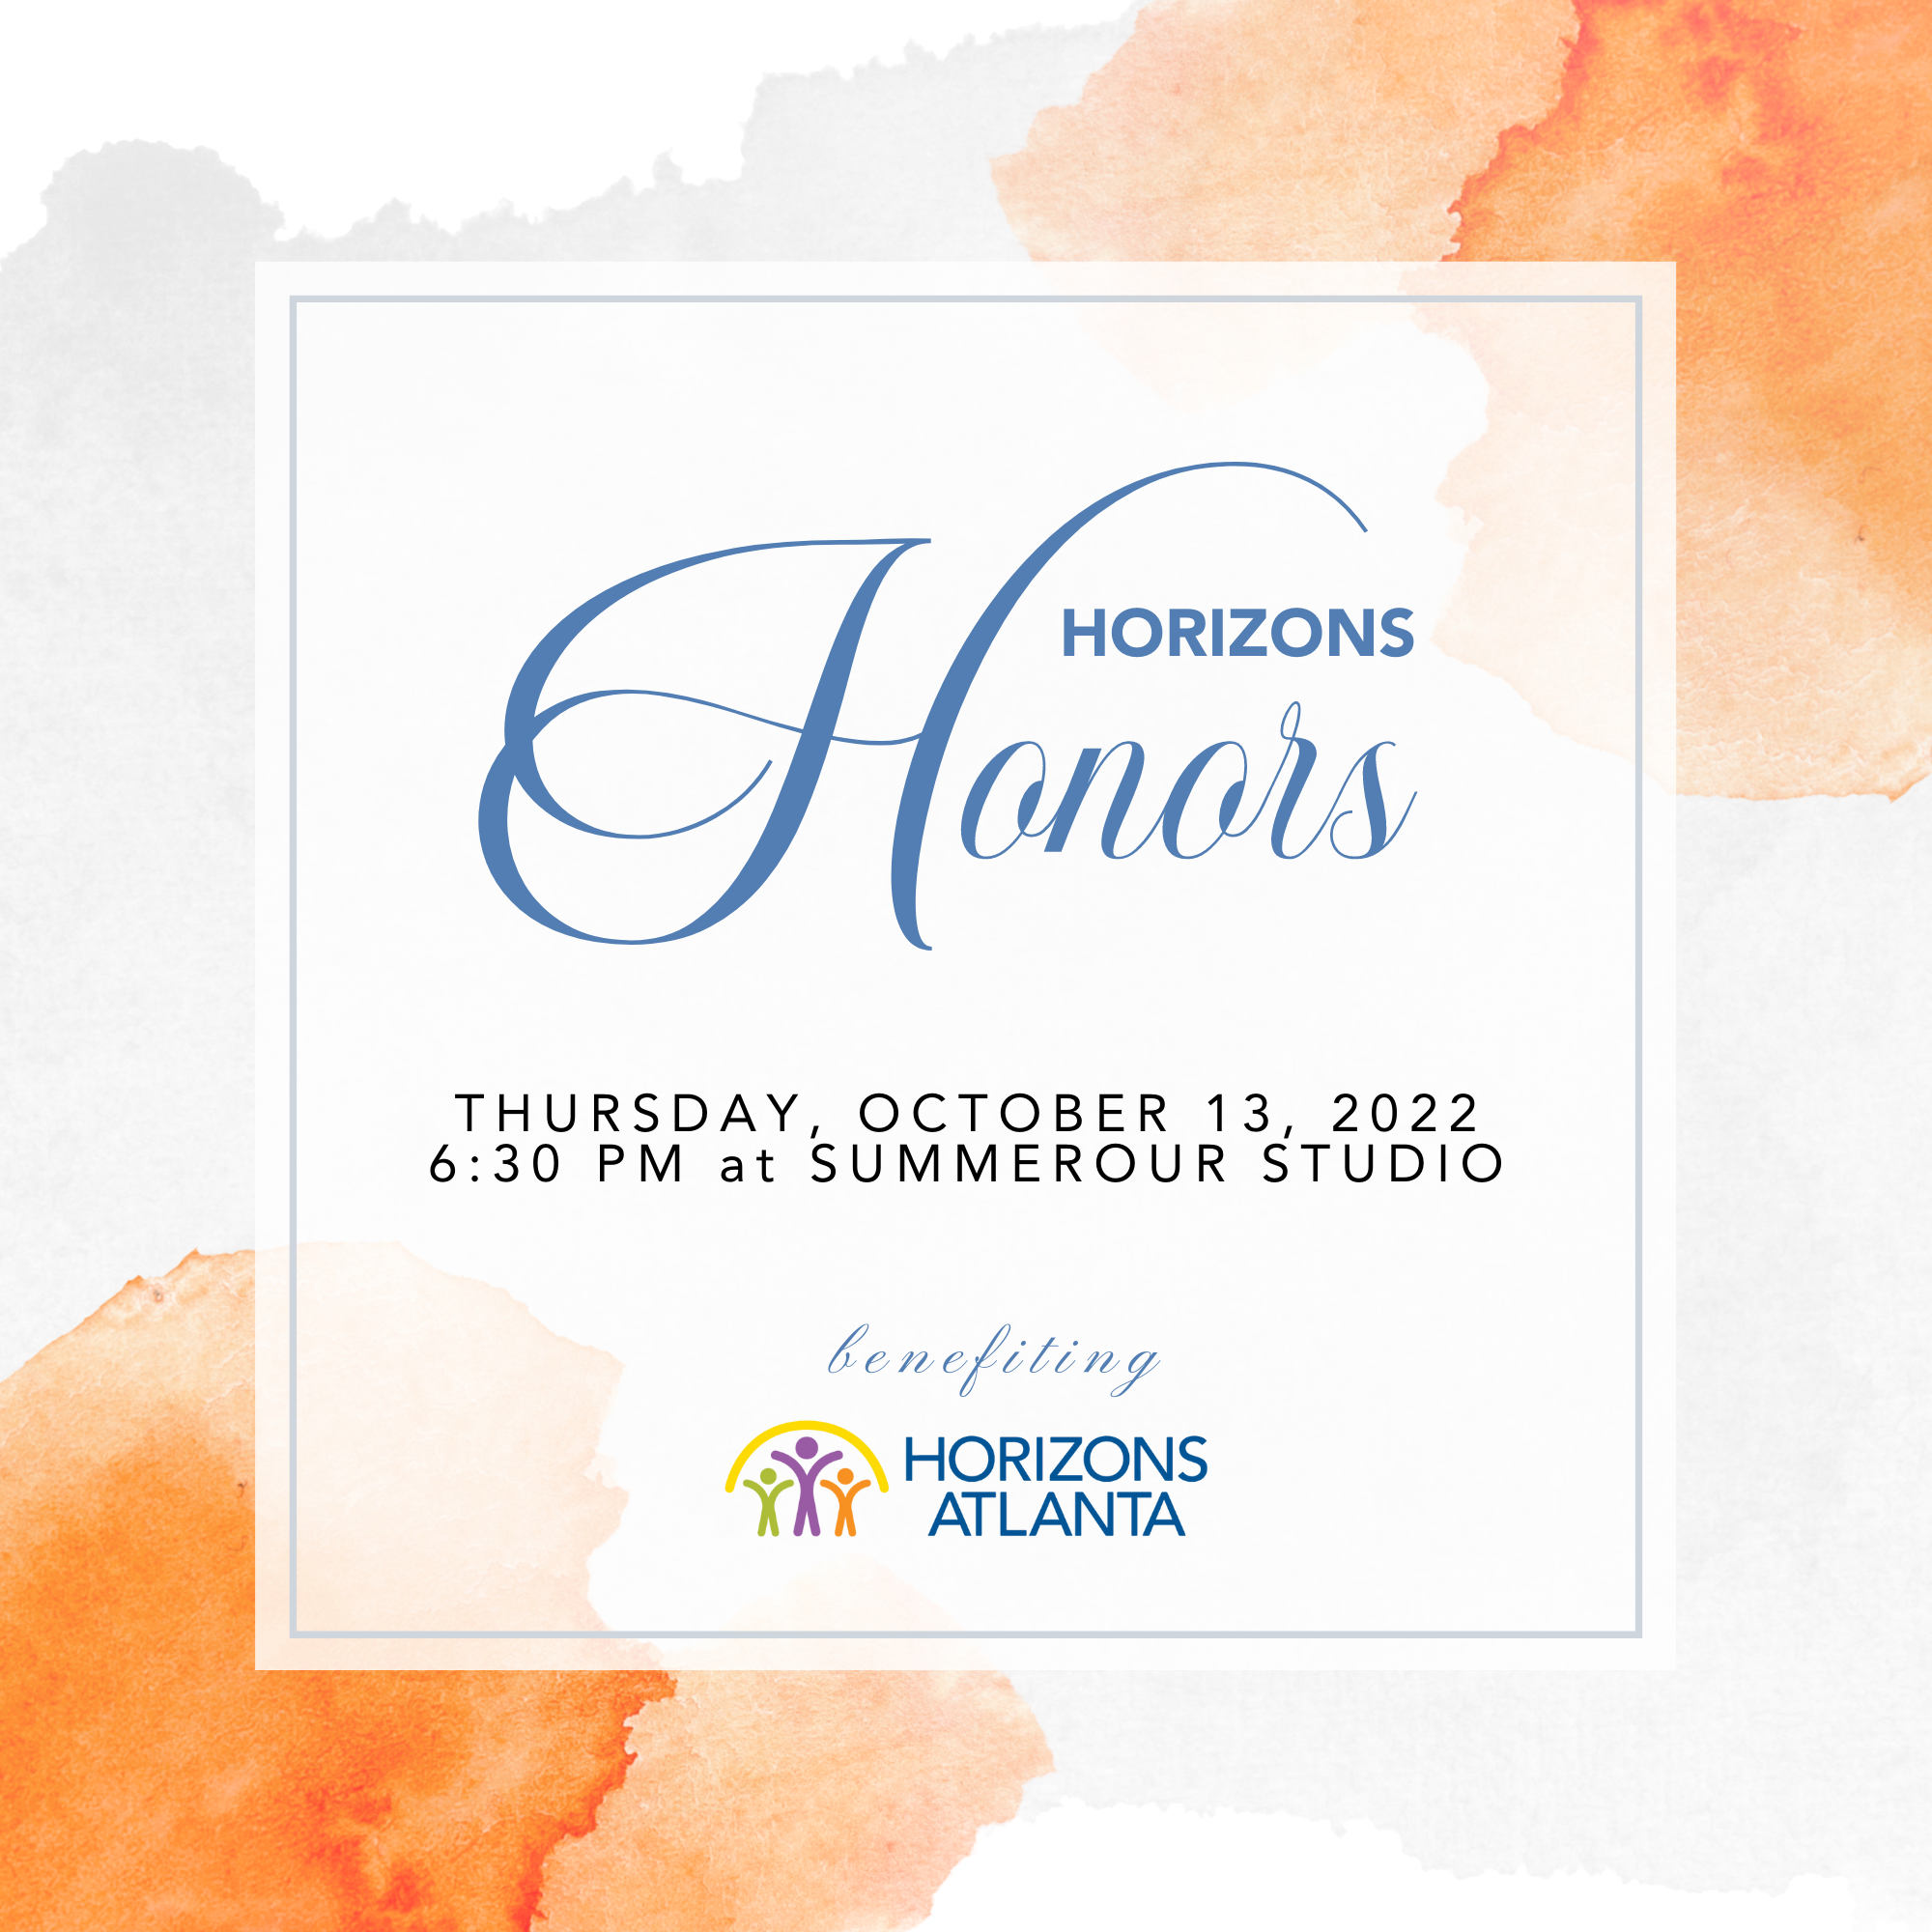 Horizons Honors, Thursday, October 13, 2022, 6:30 PM at Summerour Studio. Benefiting Horizons Atlanta.